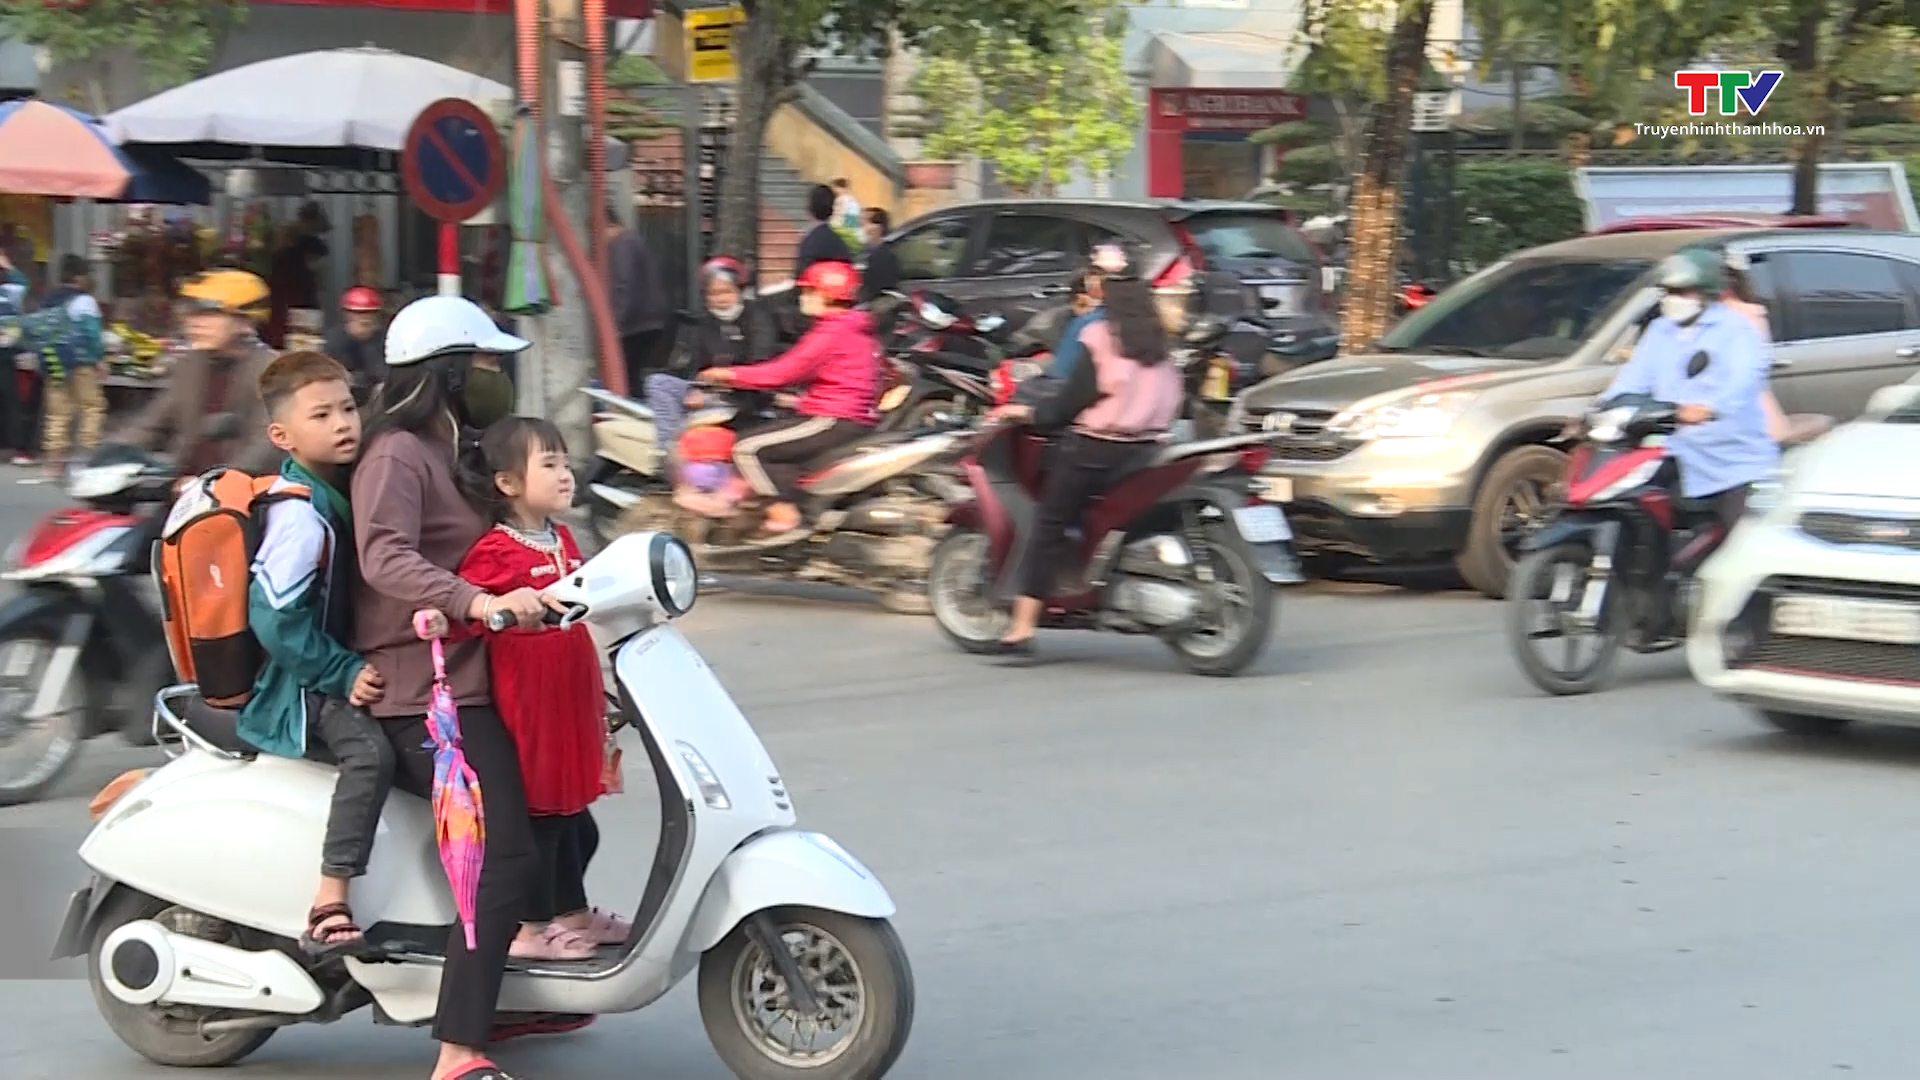 Cảnh báo mất an toàn giao thông khi để trẻ em ngồi trước người lái xe môtô, xe gắn máy - Ảnh 2.